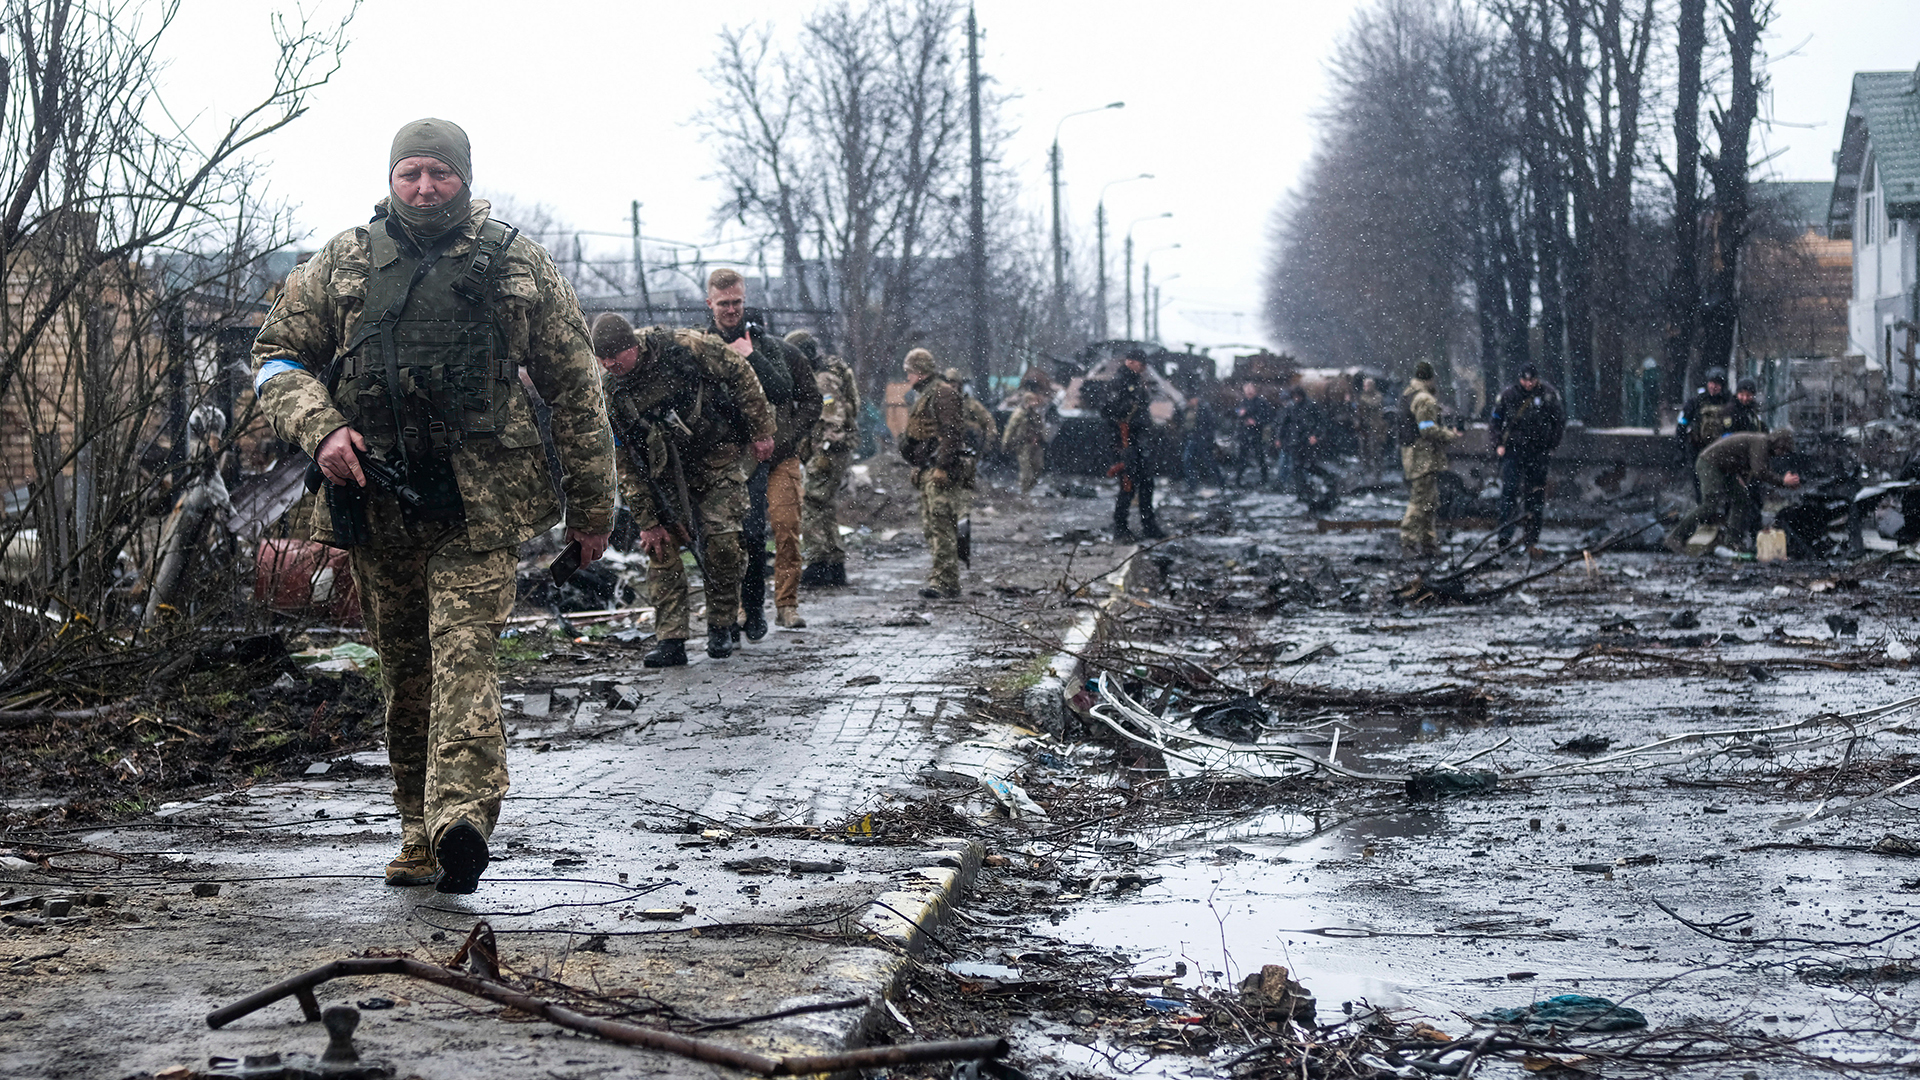 Ukrainische Soldaten inspizieren die Trümmer einer zerstörten russischen Panzerkolonne auf einer Straße in Butscha. | dpa